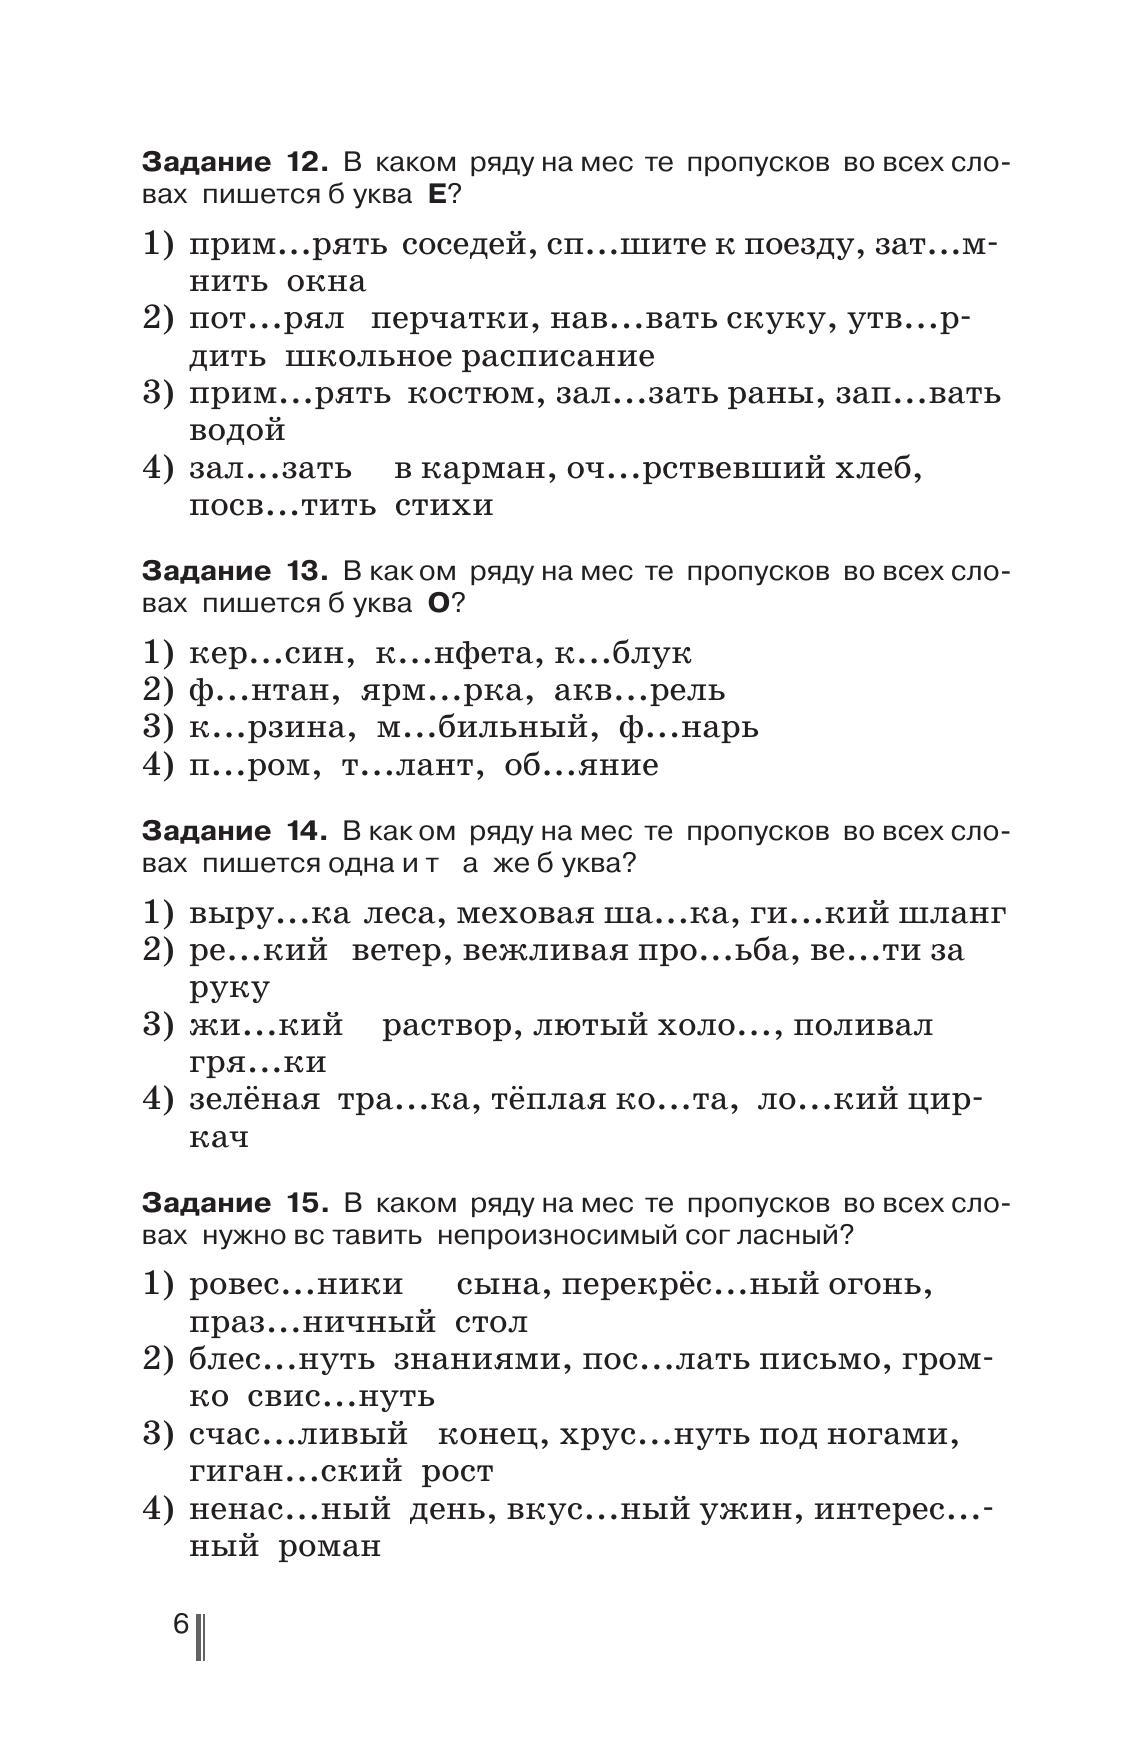 Русский язык. Готовимся к ГИА. Тесты, творческие работы, проекты. 5 класс 6